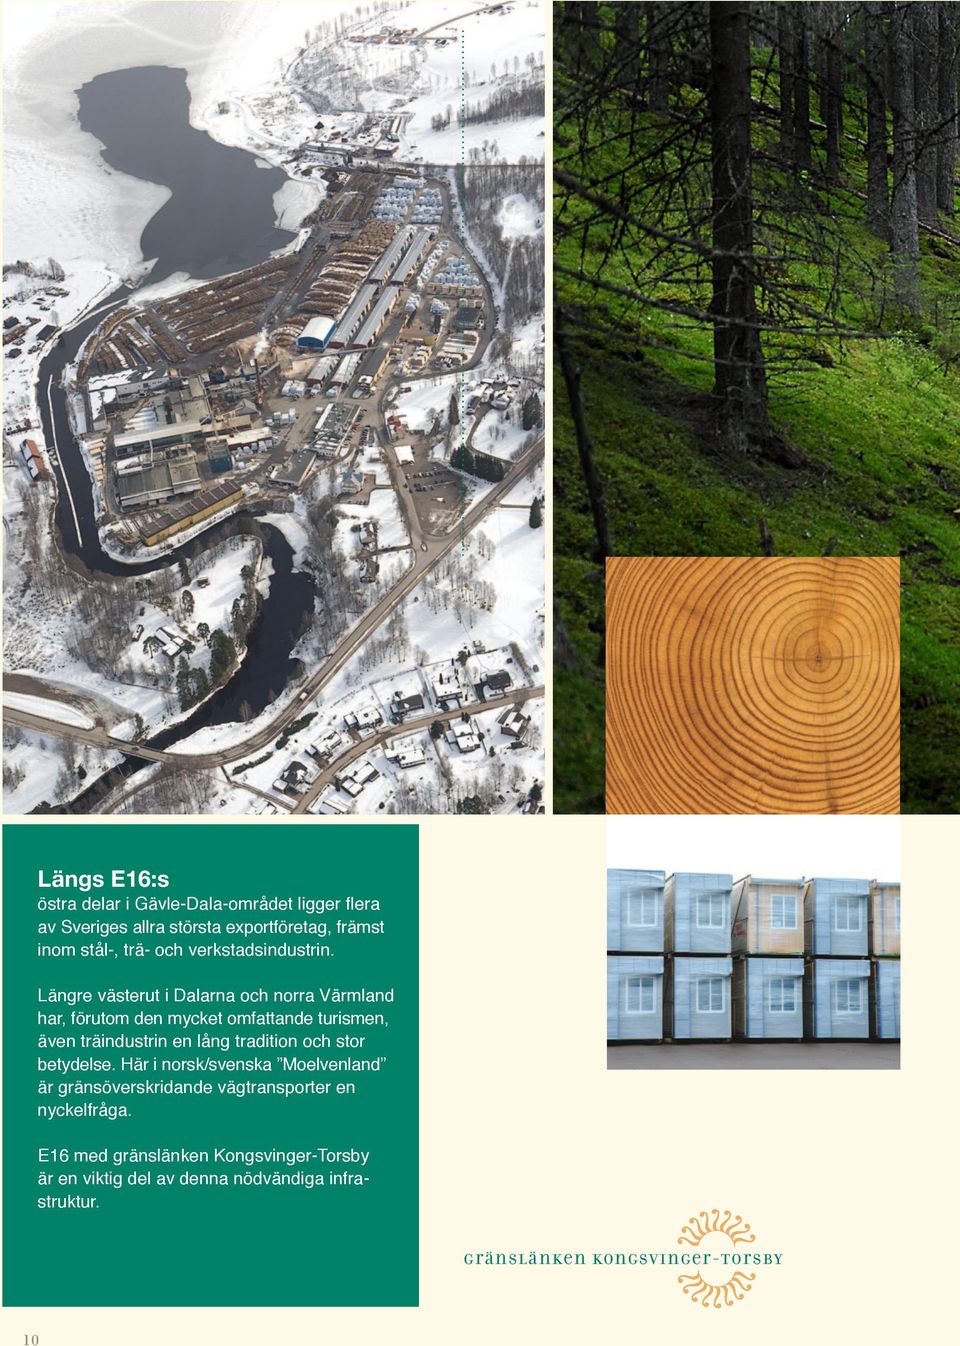 Längre västerut i Dalarna och norra Värmland har, förutom den mycket omfattande turismen, även träindustrin en lång tradition